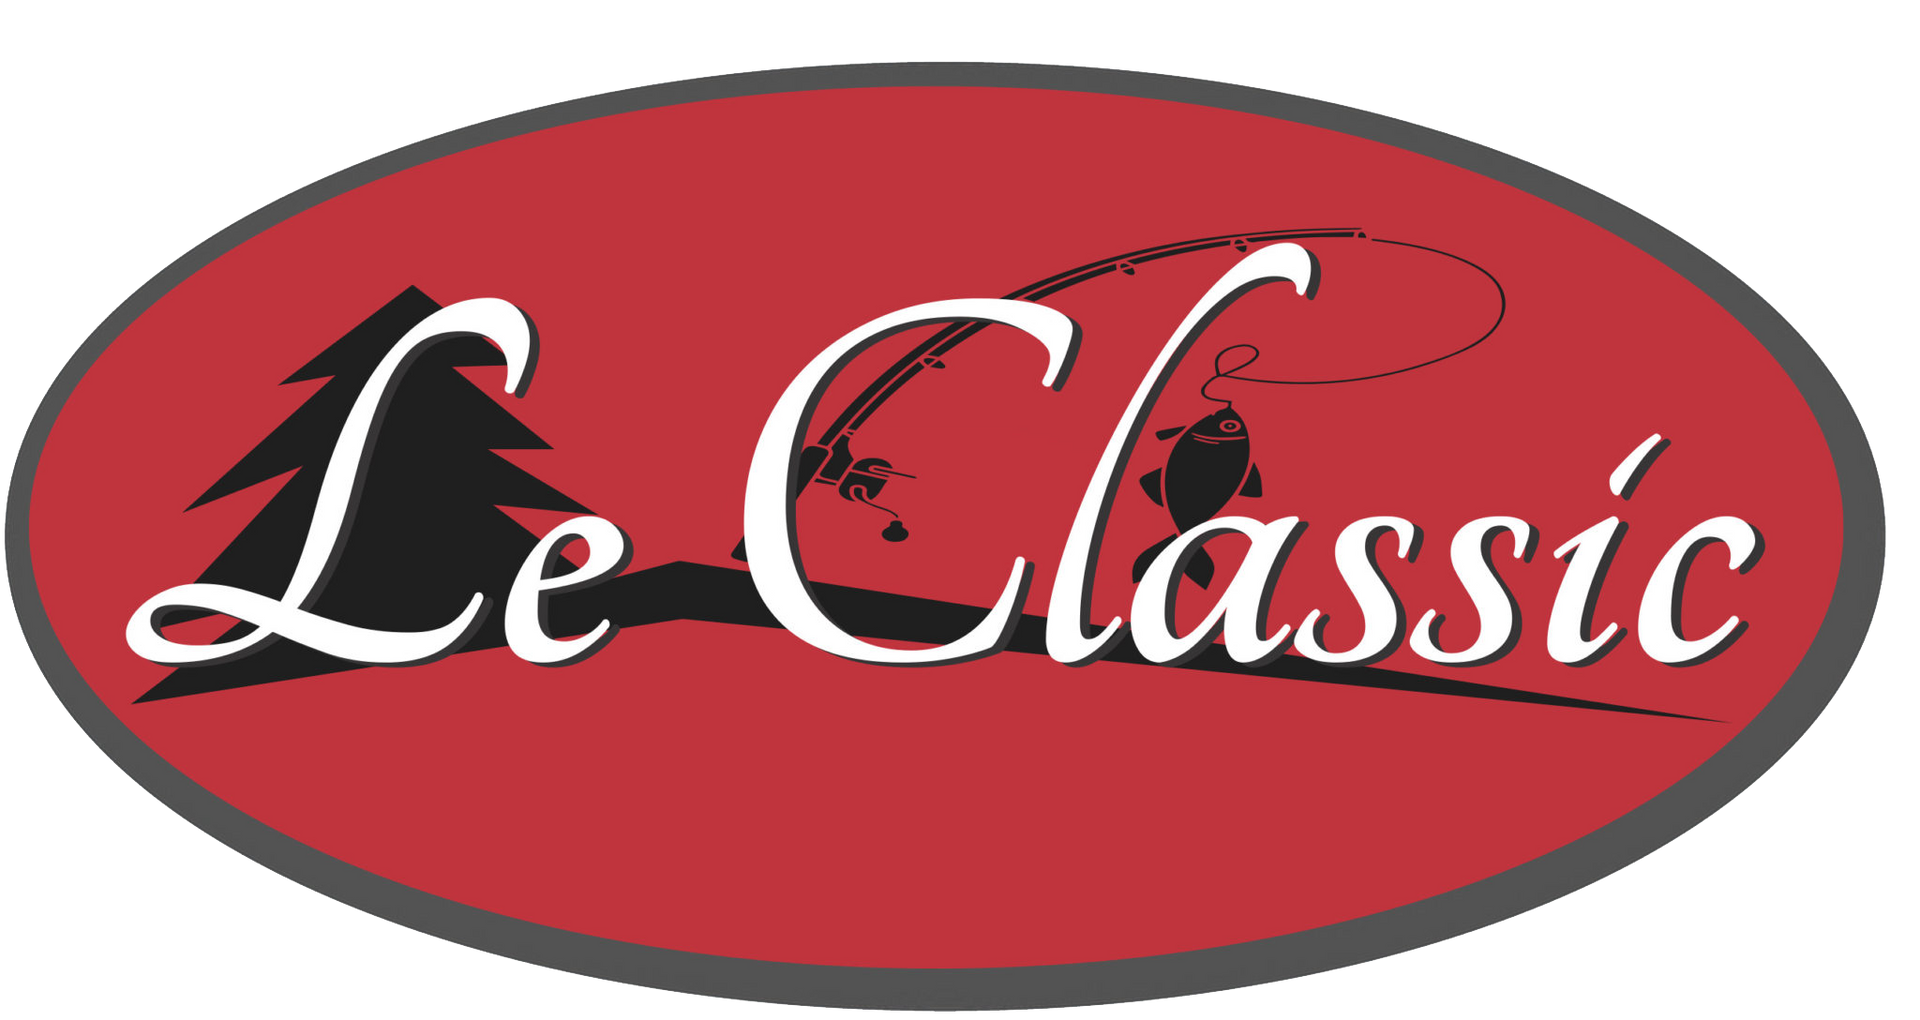 Le Classic Logo